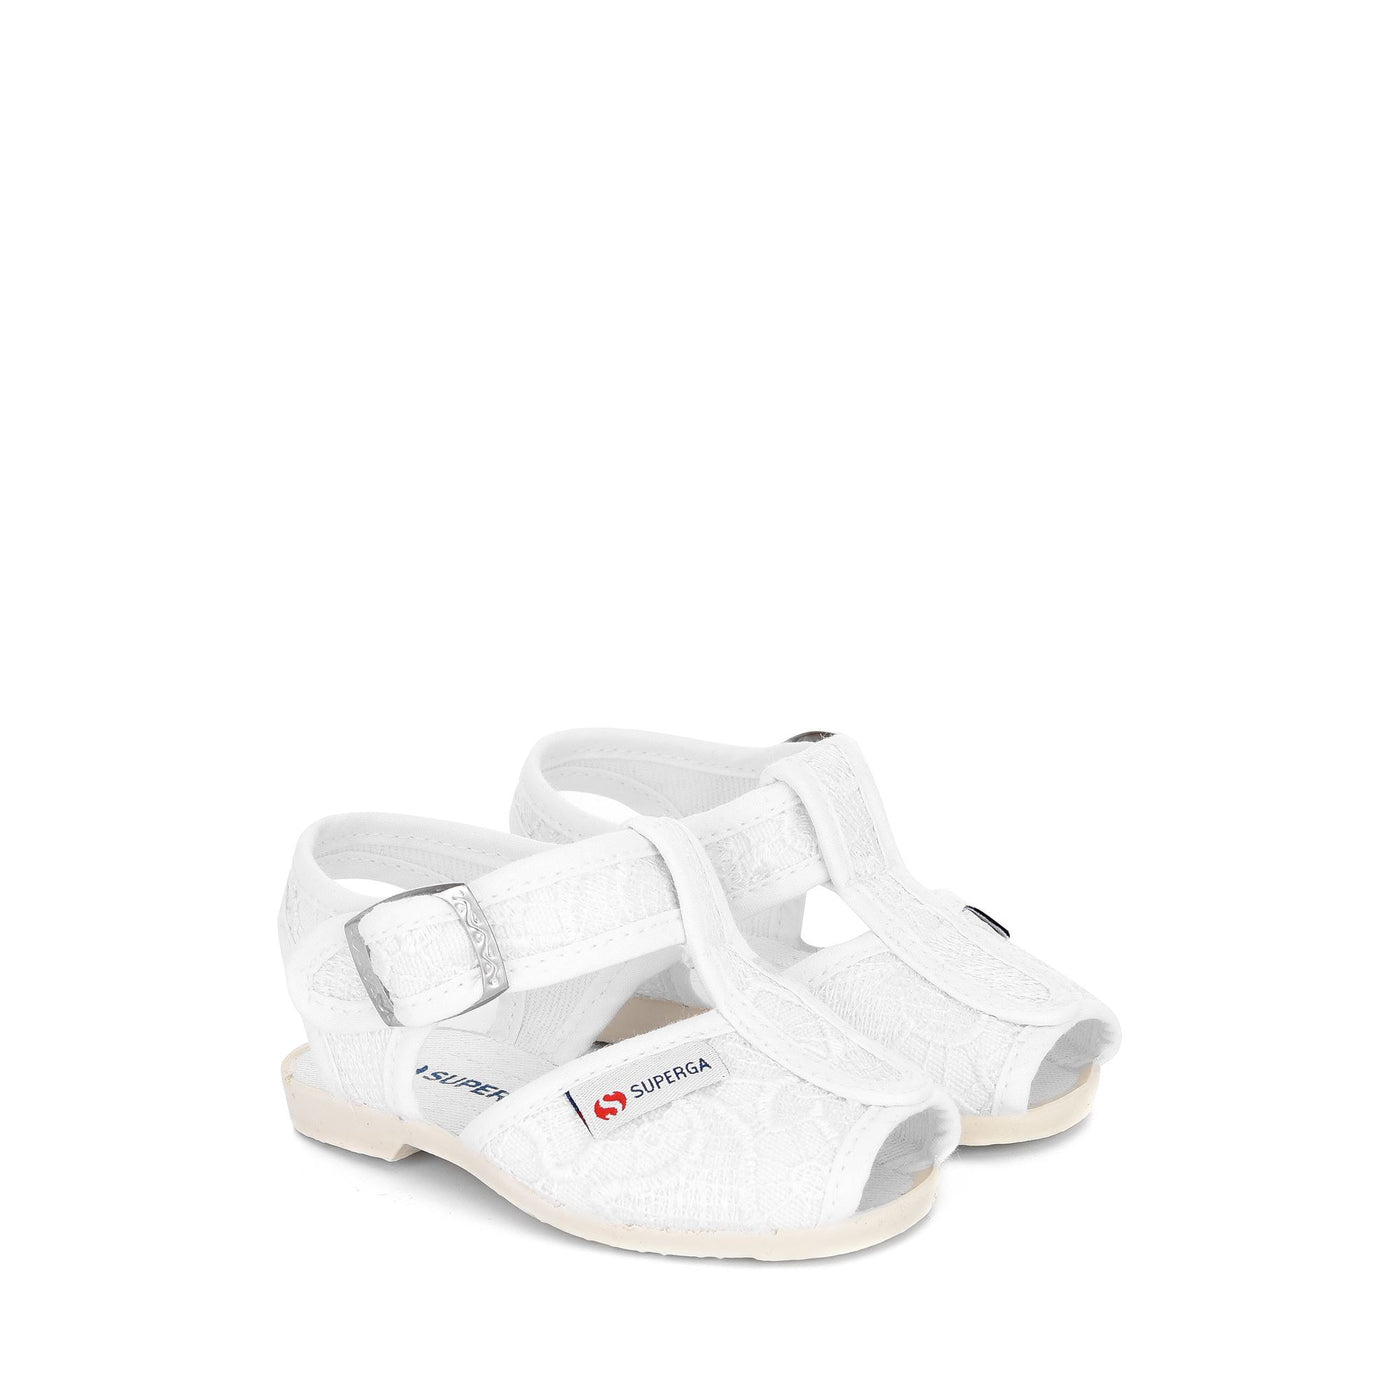 Sandals Girl 1200-macramej Sandal WHITE Dressed Front (jpg Rgb)	